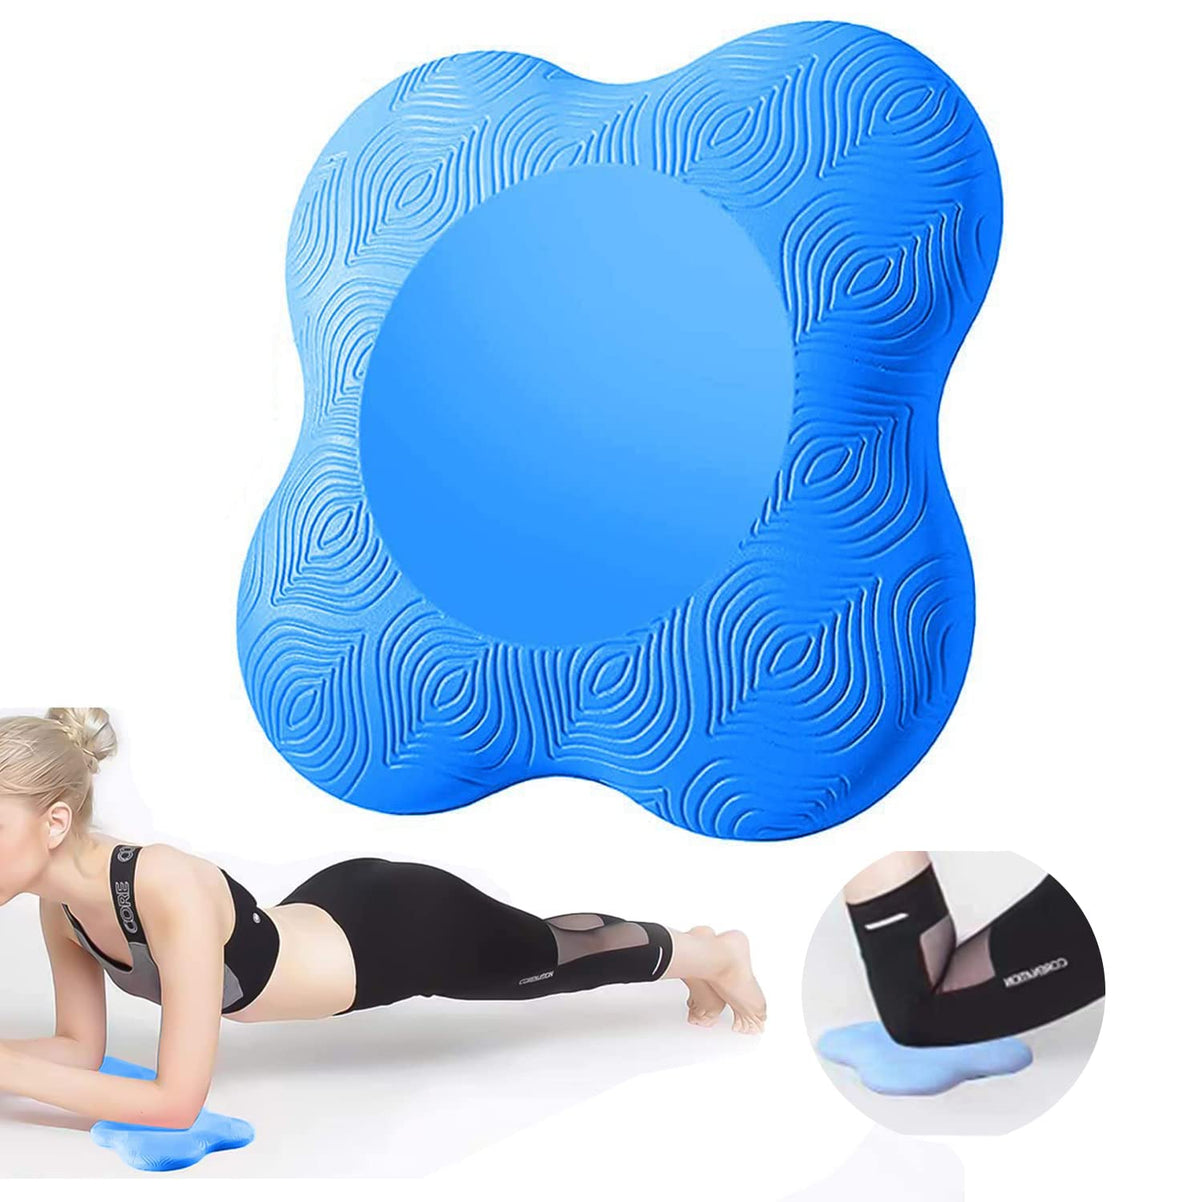 Strauss Yoga Knee Pad Cushions, (Blue)